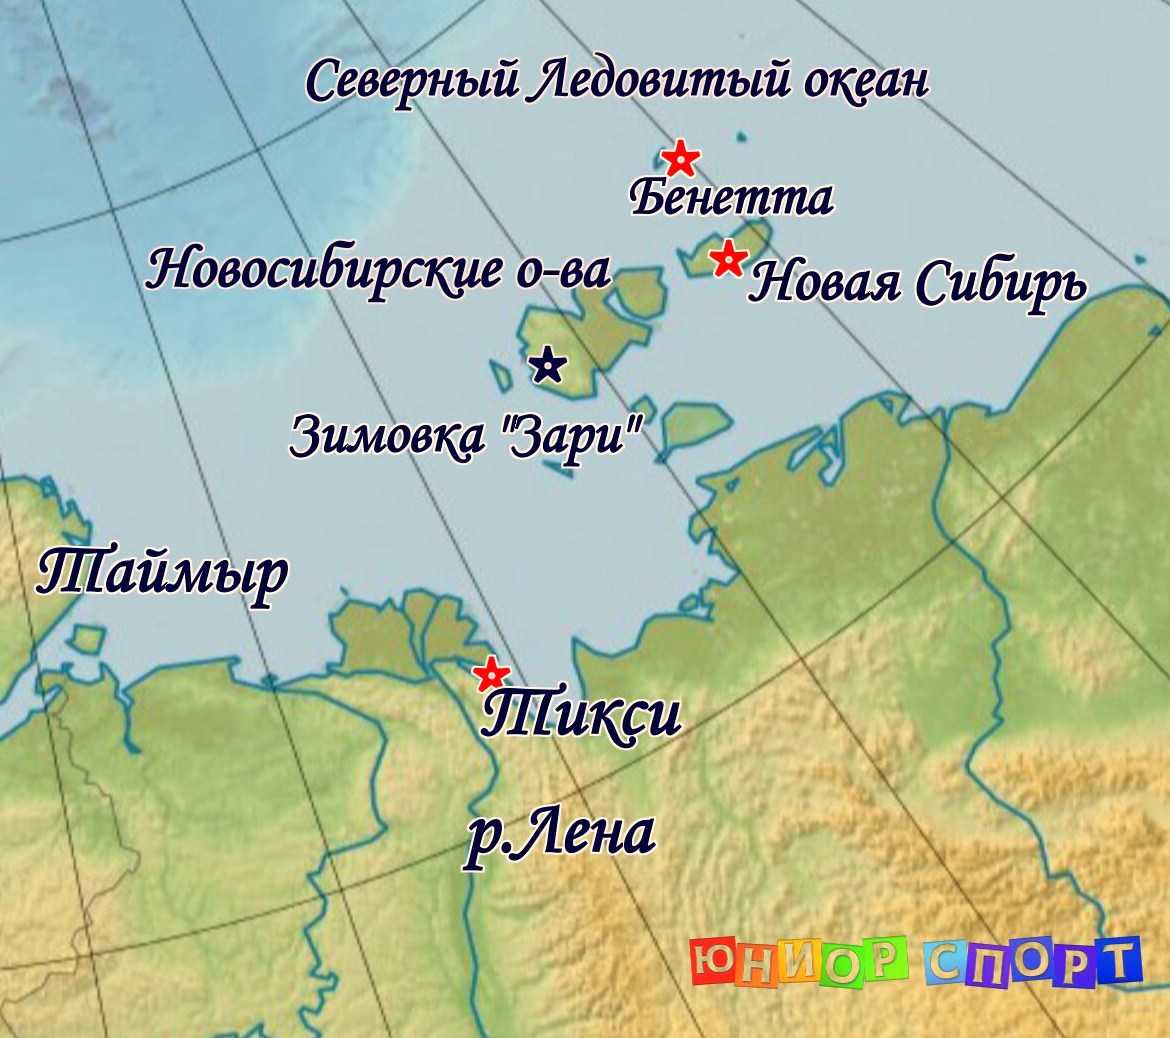 Координаты крайней точки челюскин. Мыс Челюскин на полуострове Таймыр на карте. Полуостров Таймыр мыс Челюскин. Мыс Челюскин на полуострове Таймыр на карте России. Карта мыс Челюскин на карте.